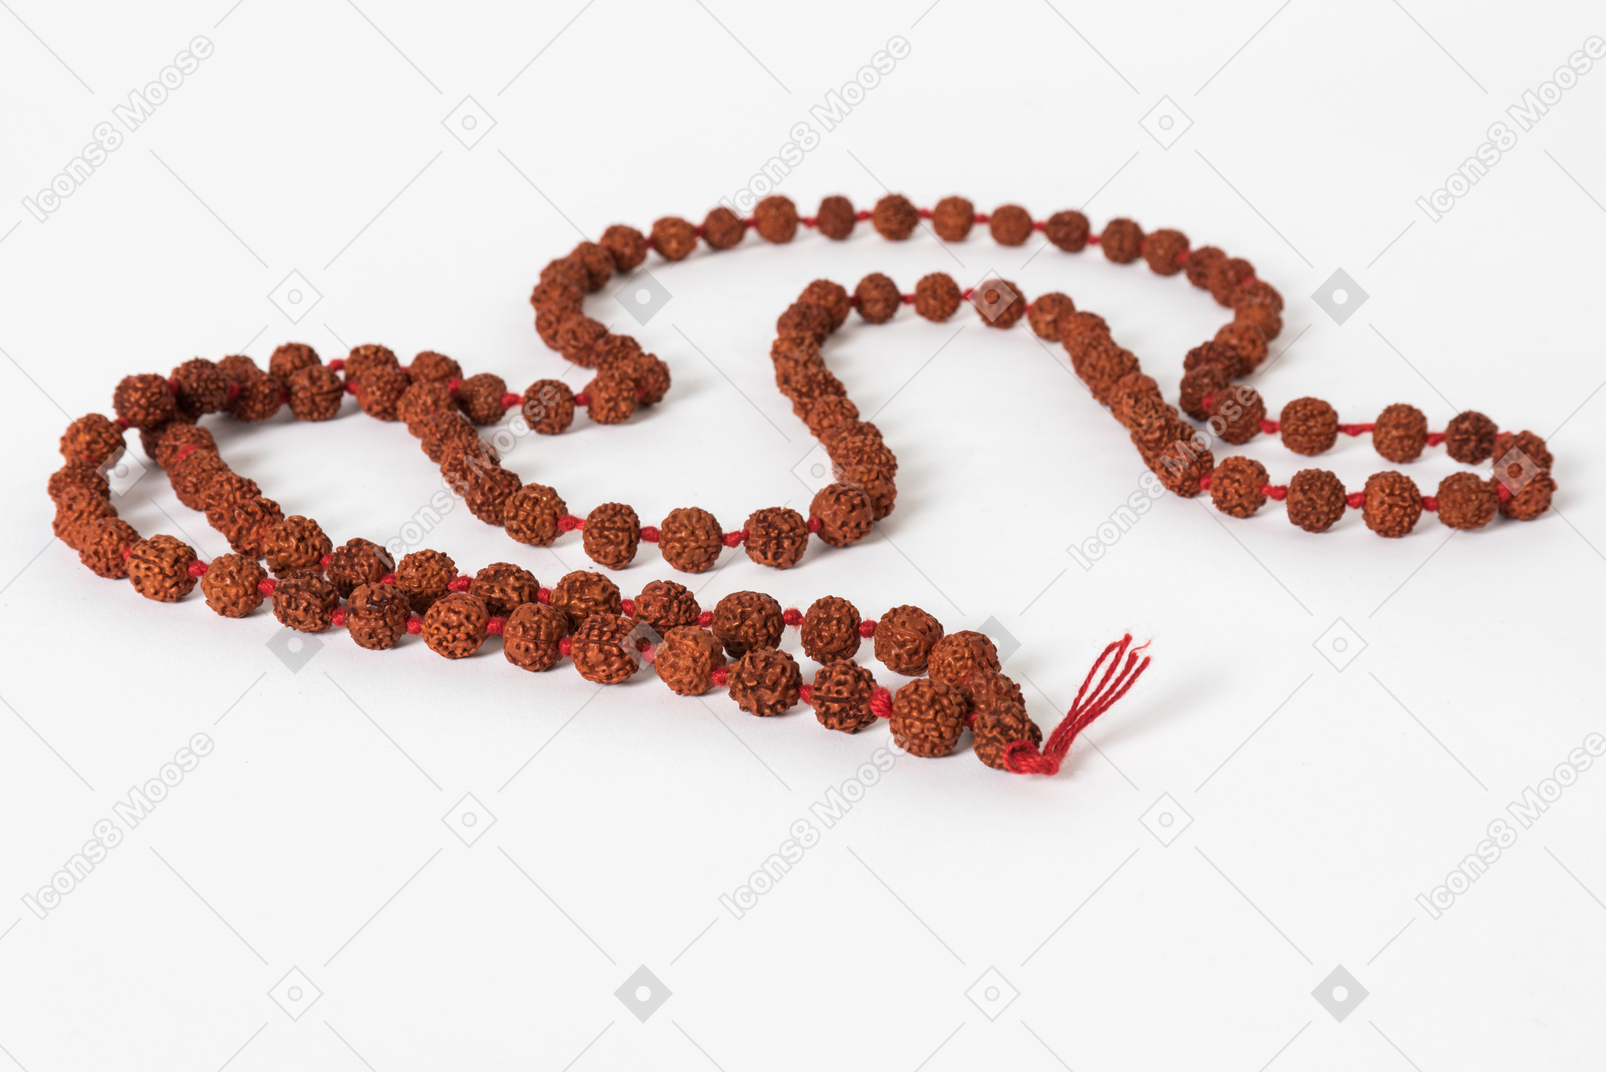 Mala beads on white background